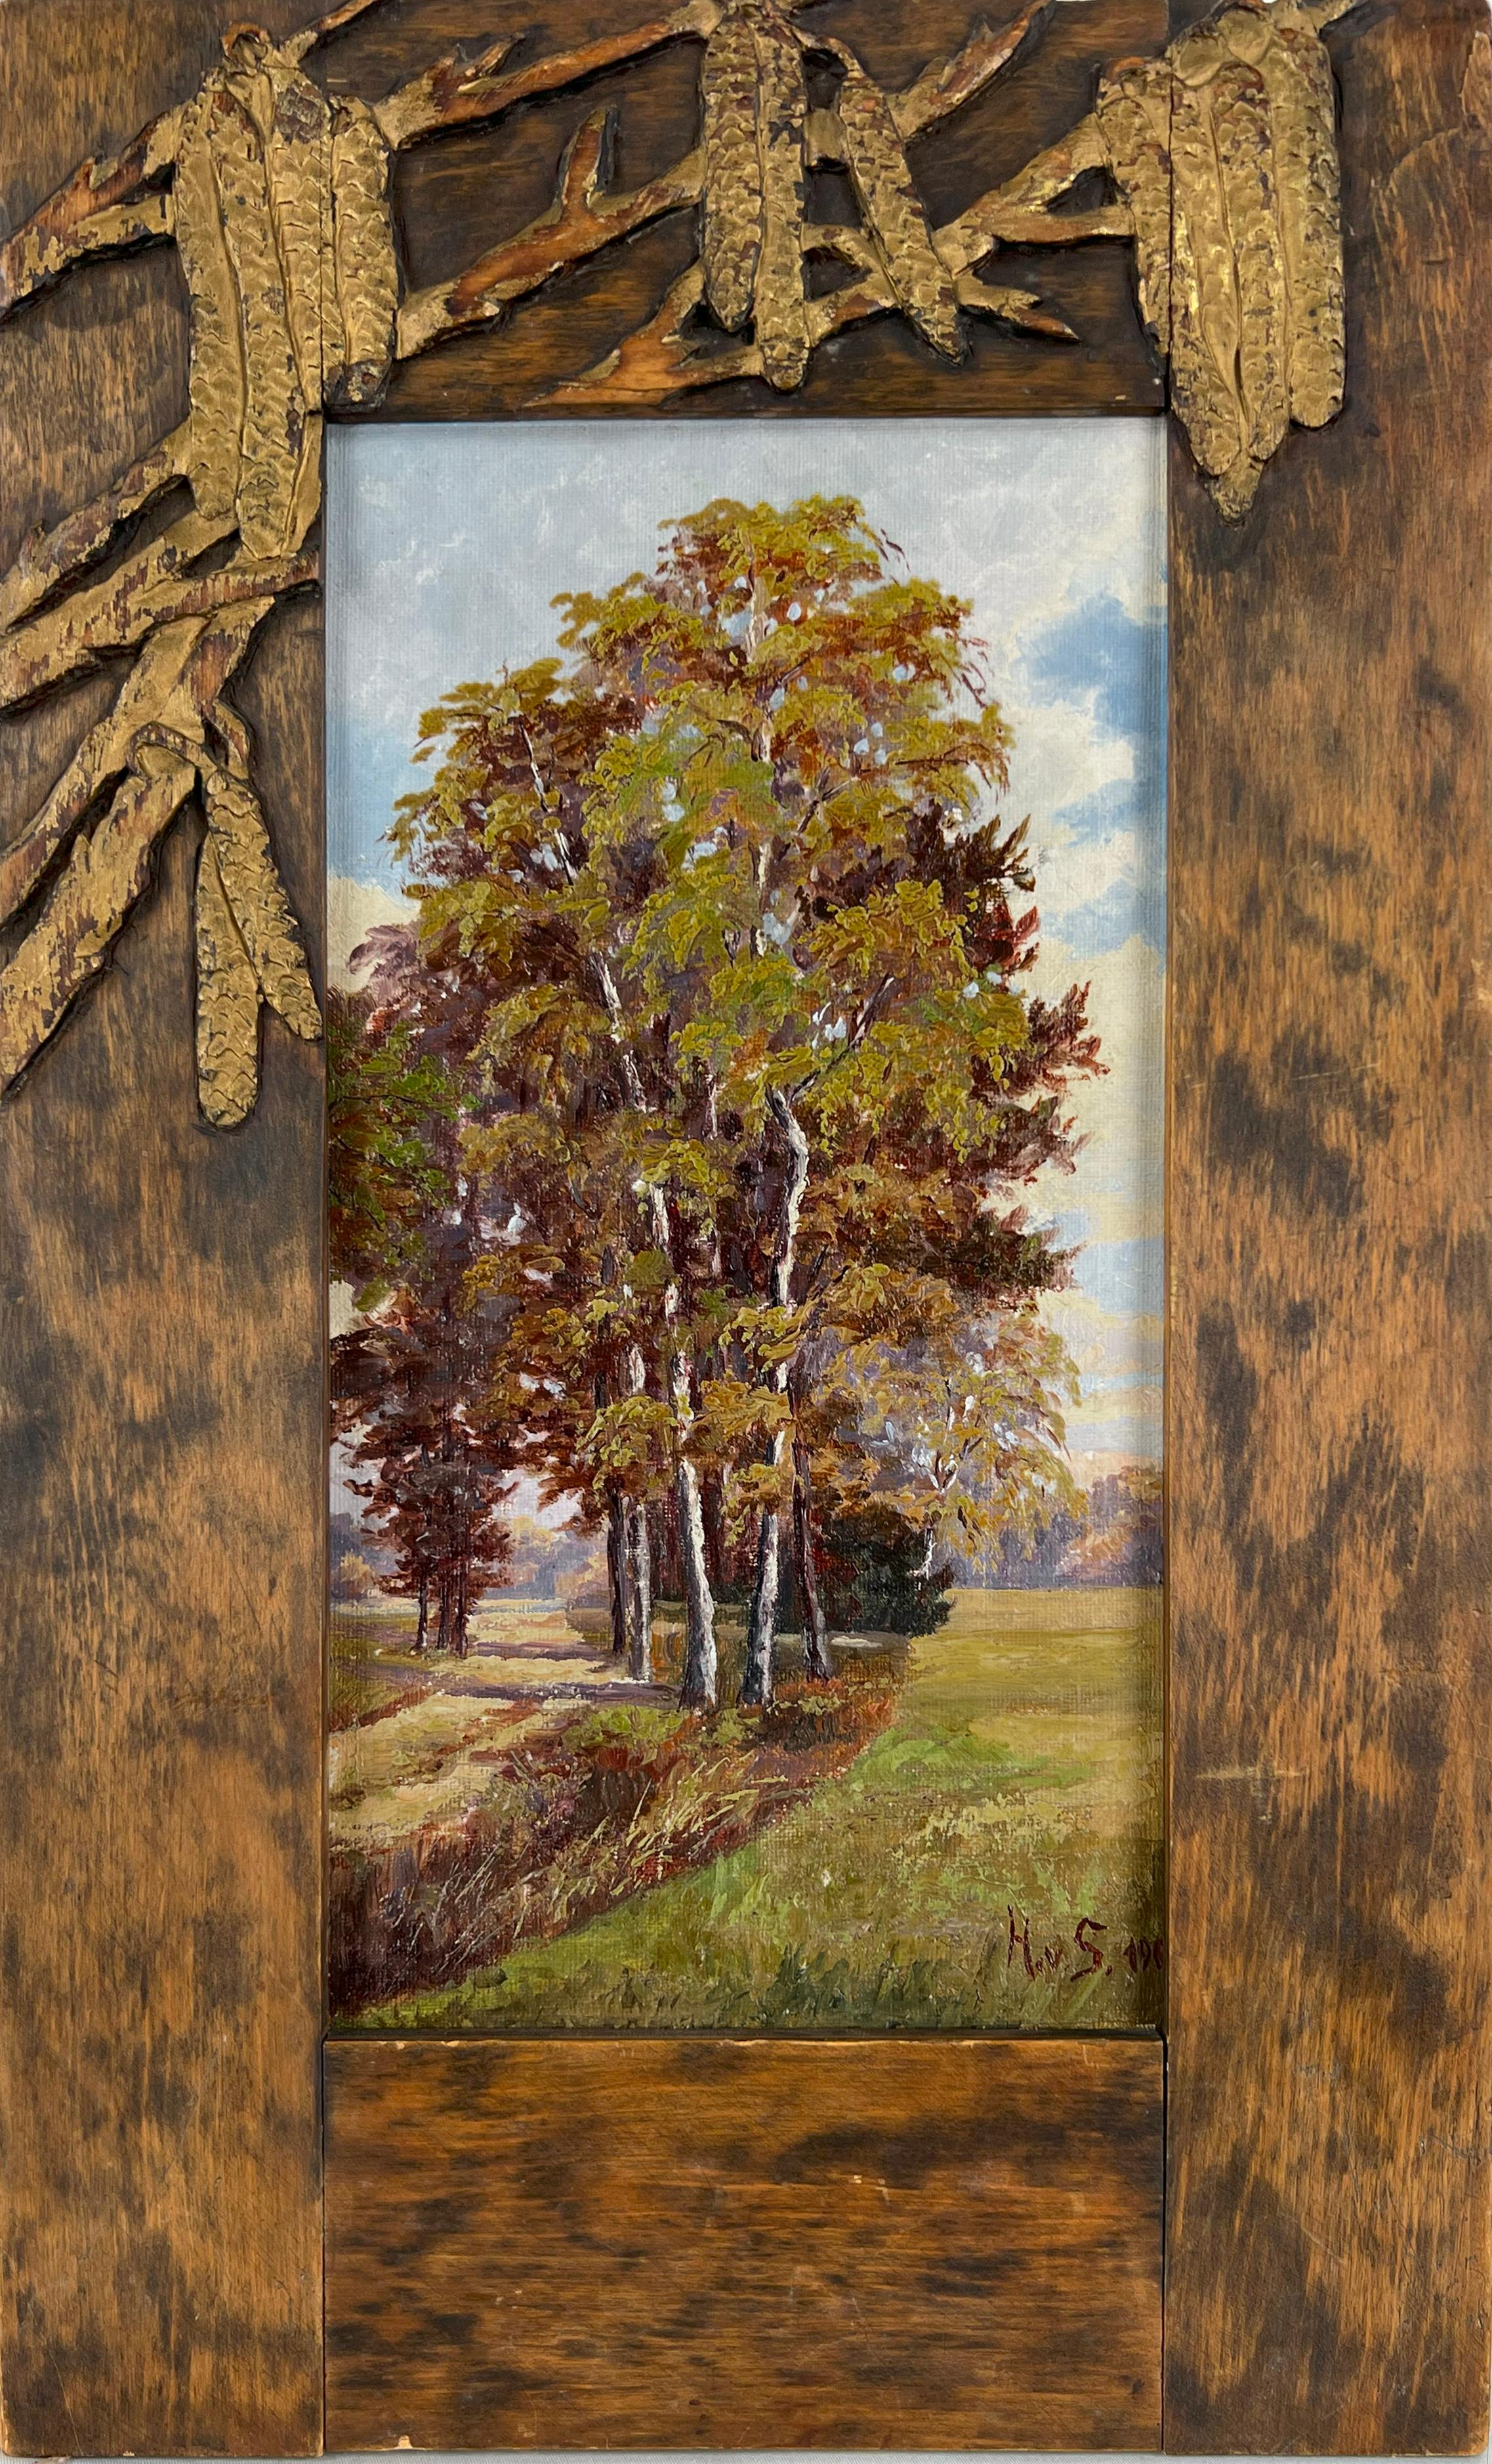 Wilhelm Von Heydebrand Landscape Painting - Austrian Landscape and Carved Wood Frame Oil on Linen 1905 Goetheanum Designer